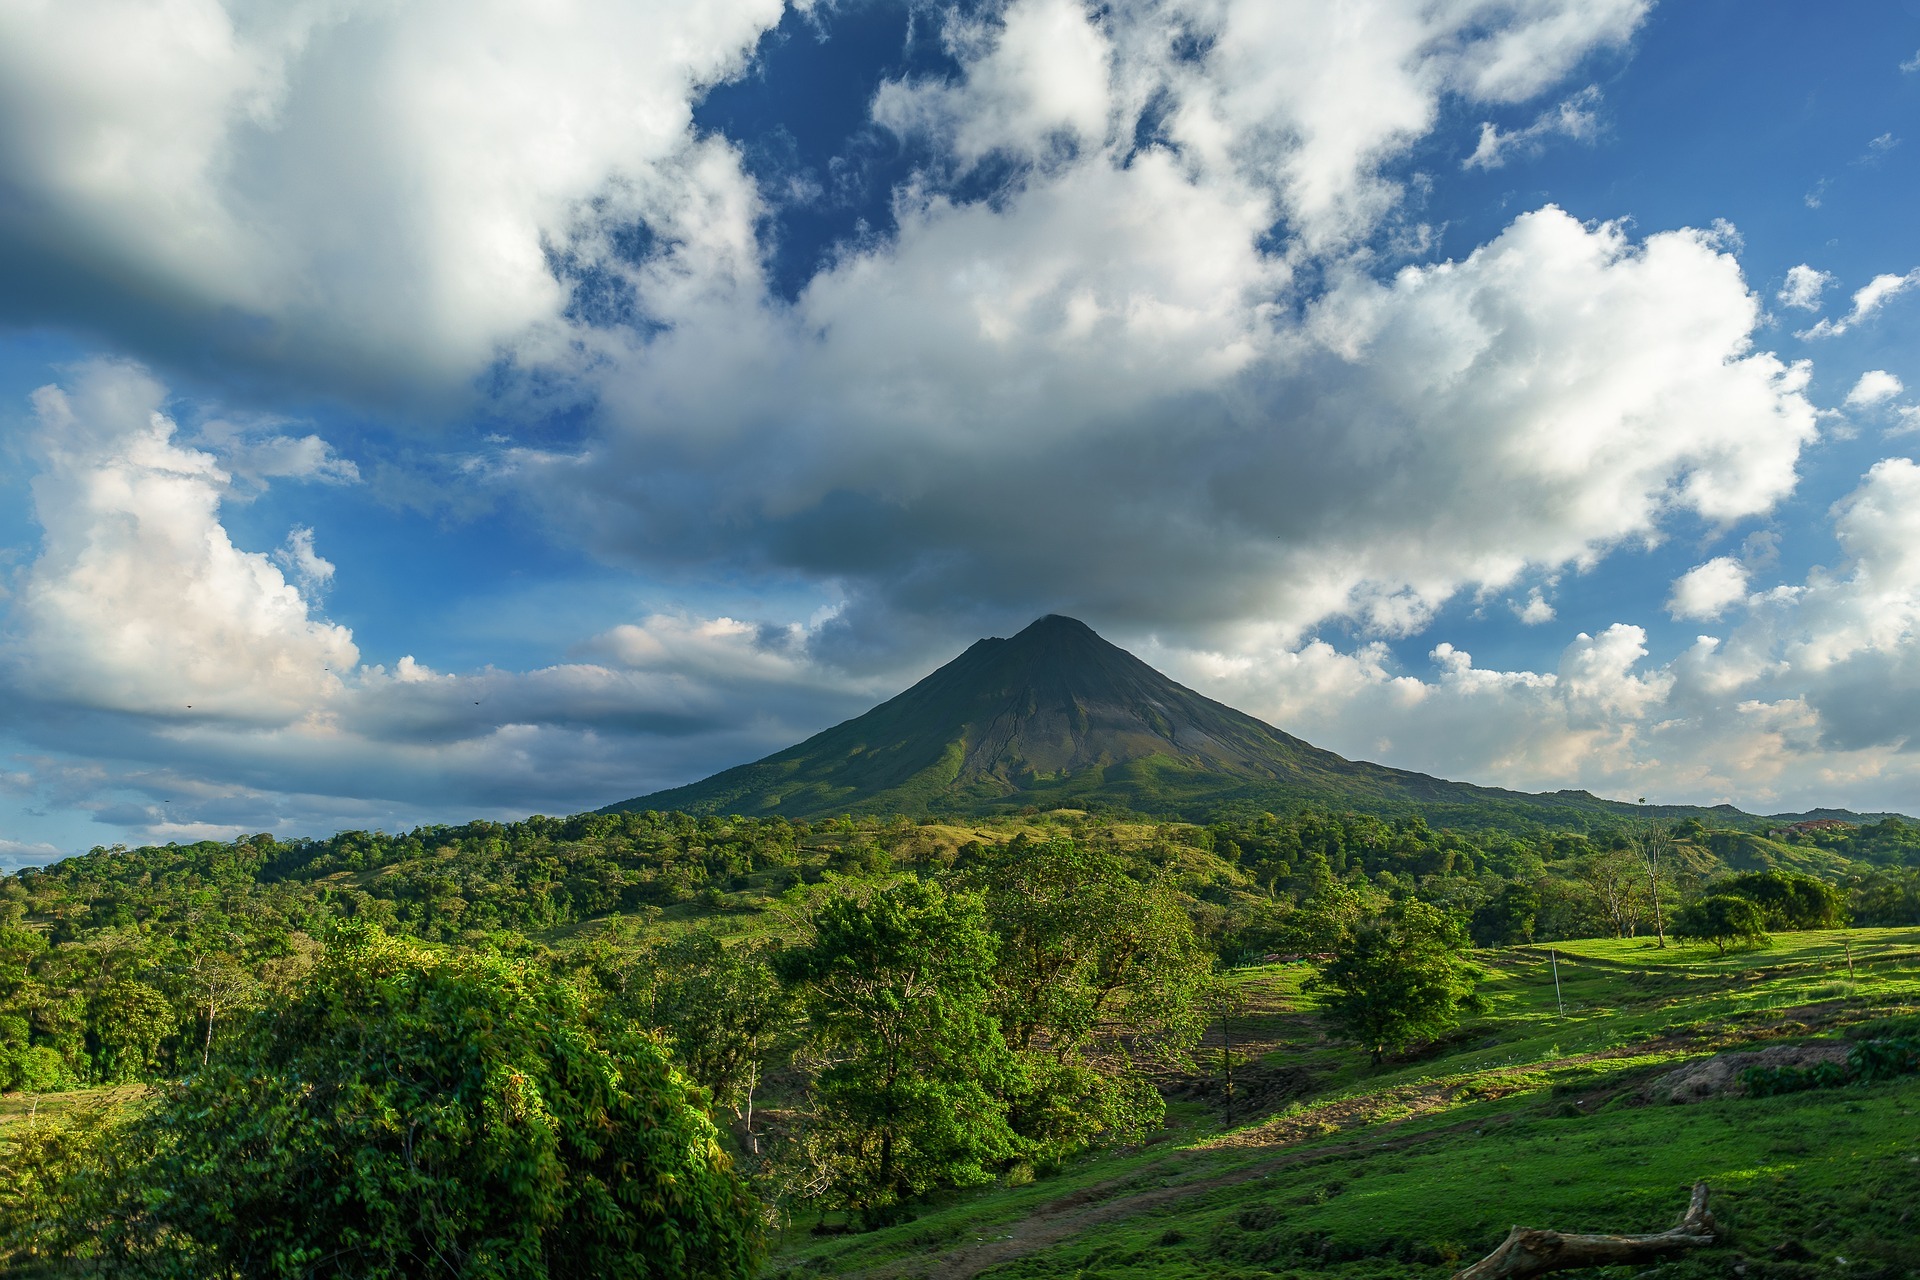 Vom Klimasünder zum Naturschutz-Vorreiter: So rettet Costa Rica Regenwald, Tiere und Umwelt